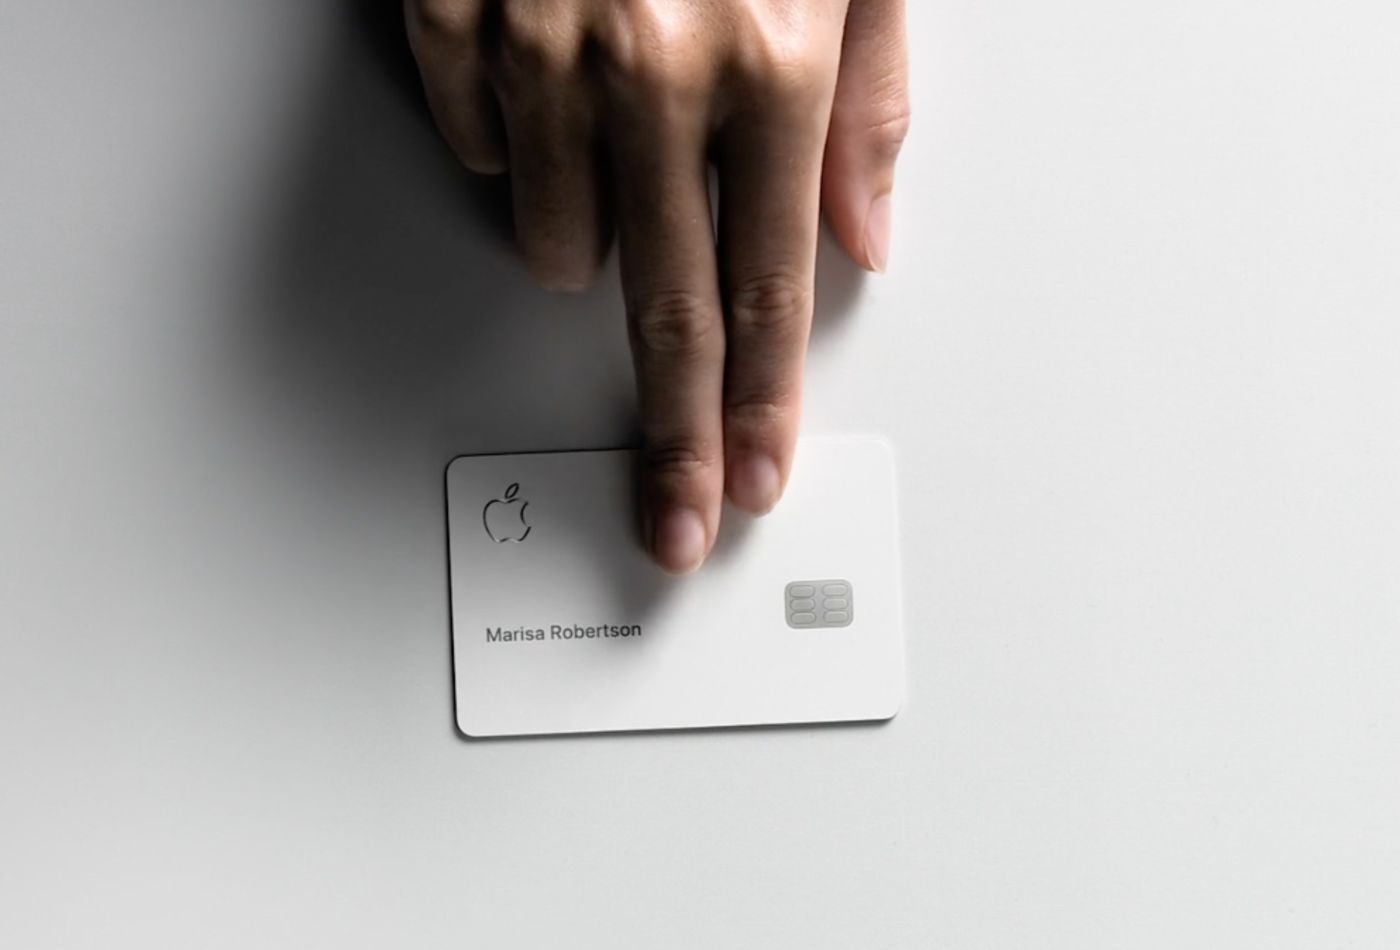 Apple Card sẽ có mức chấp thuận cao, một tin vui cho những người có điểm tín dụng thấp